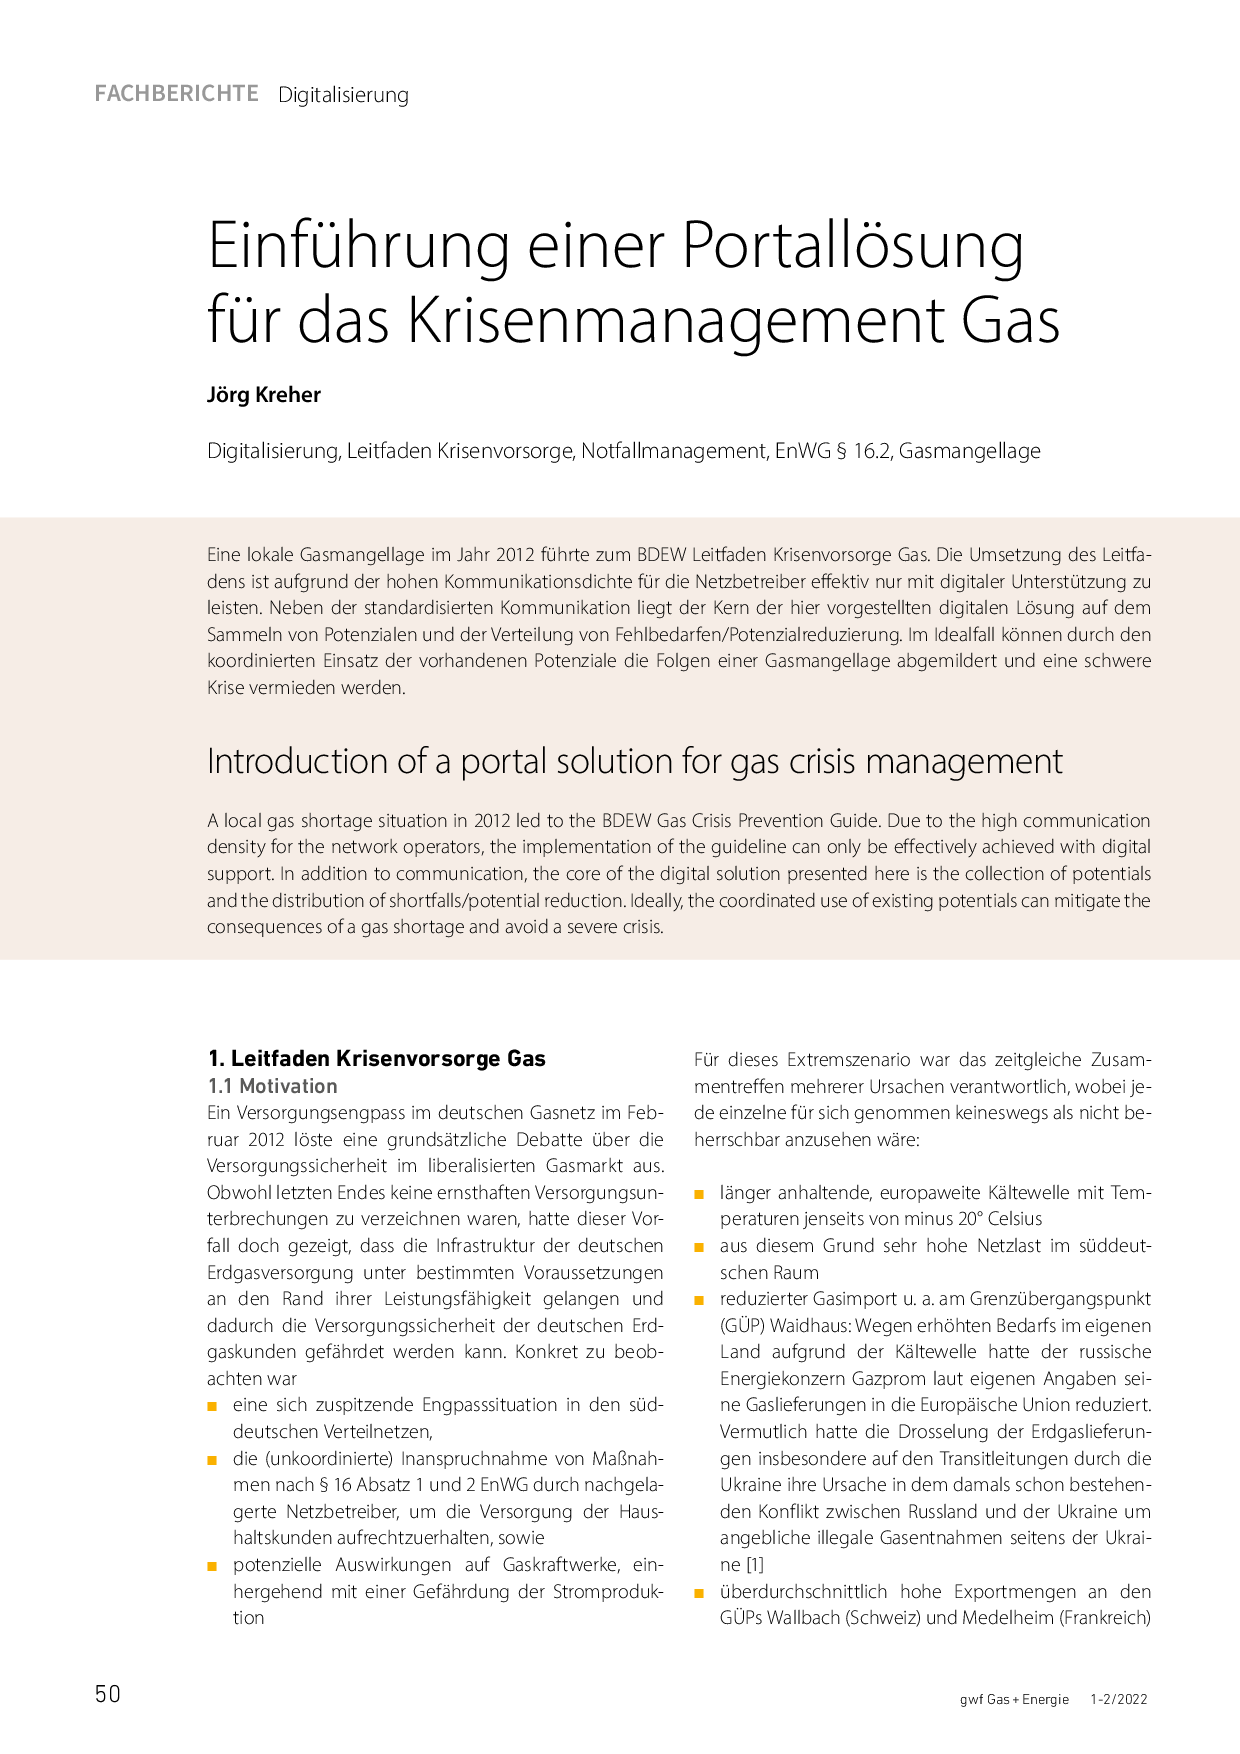 Einführung einer Portallösung für das Krisenmanagement Gas